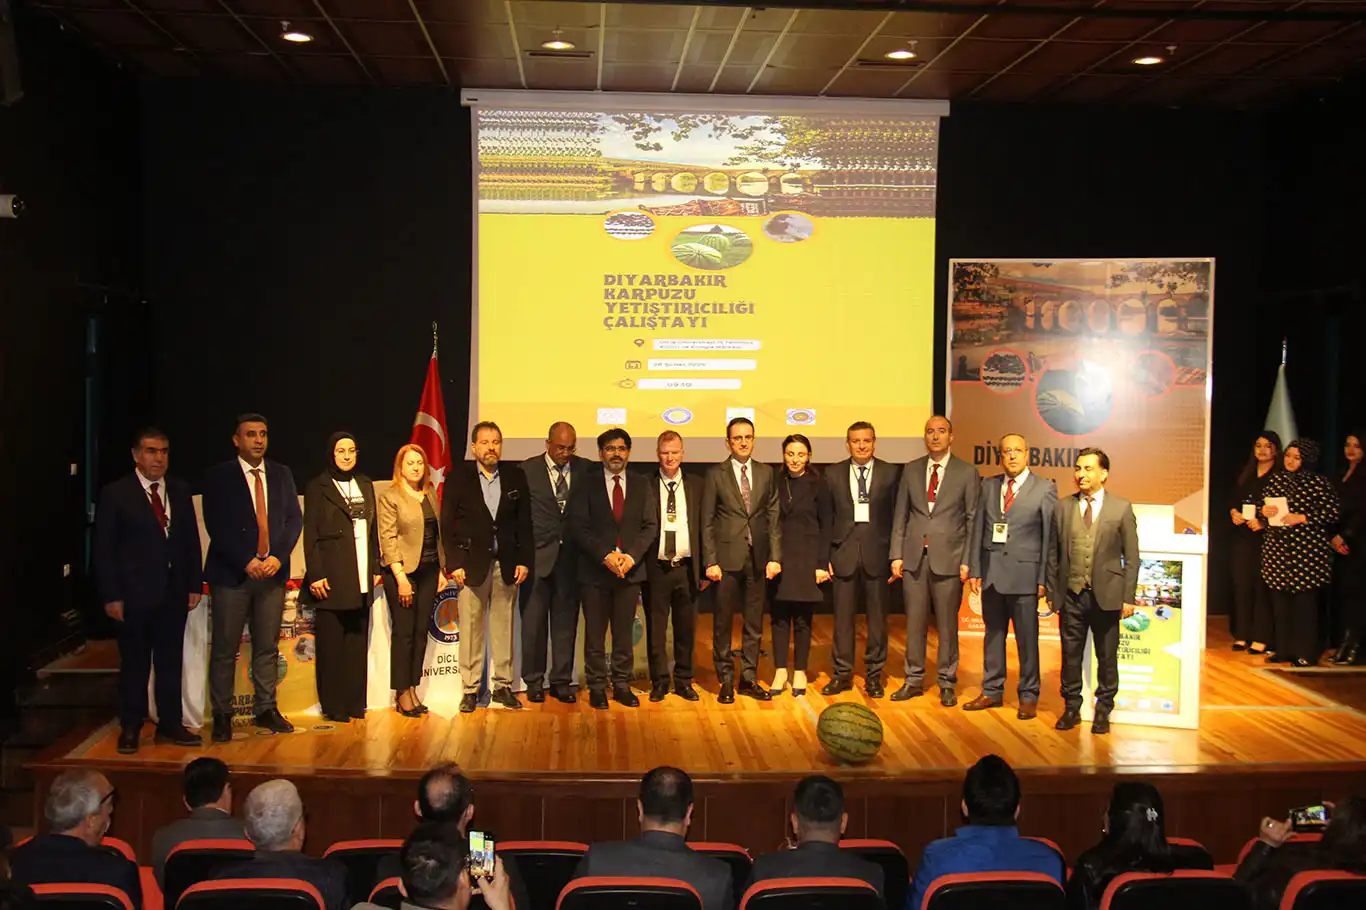 Diyarbakır'da karpuz yetiştiriciliği çalıştayı yapıldı